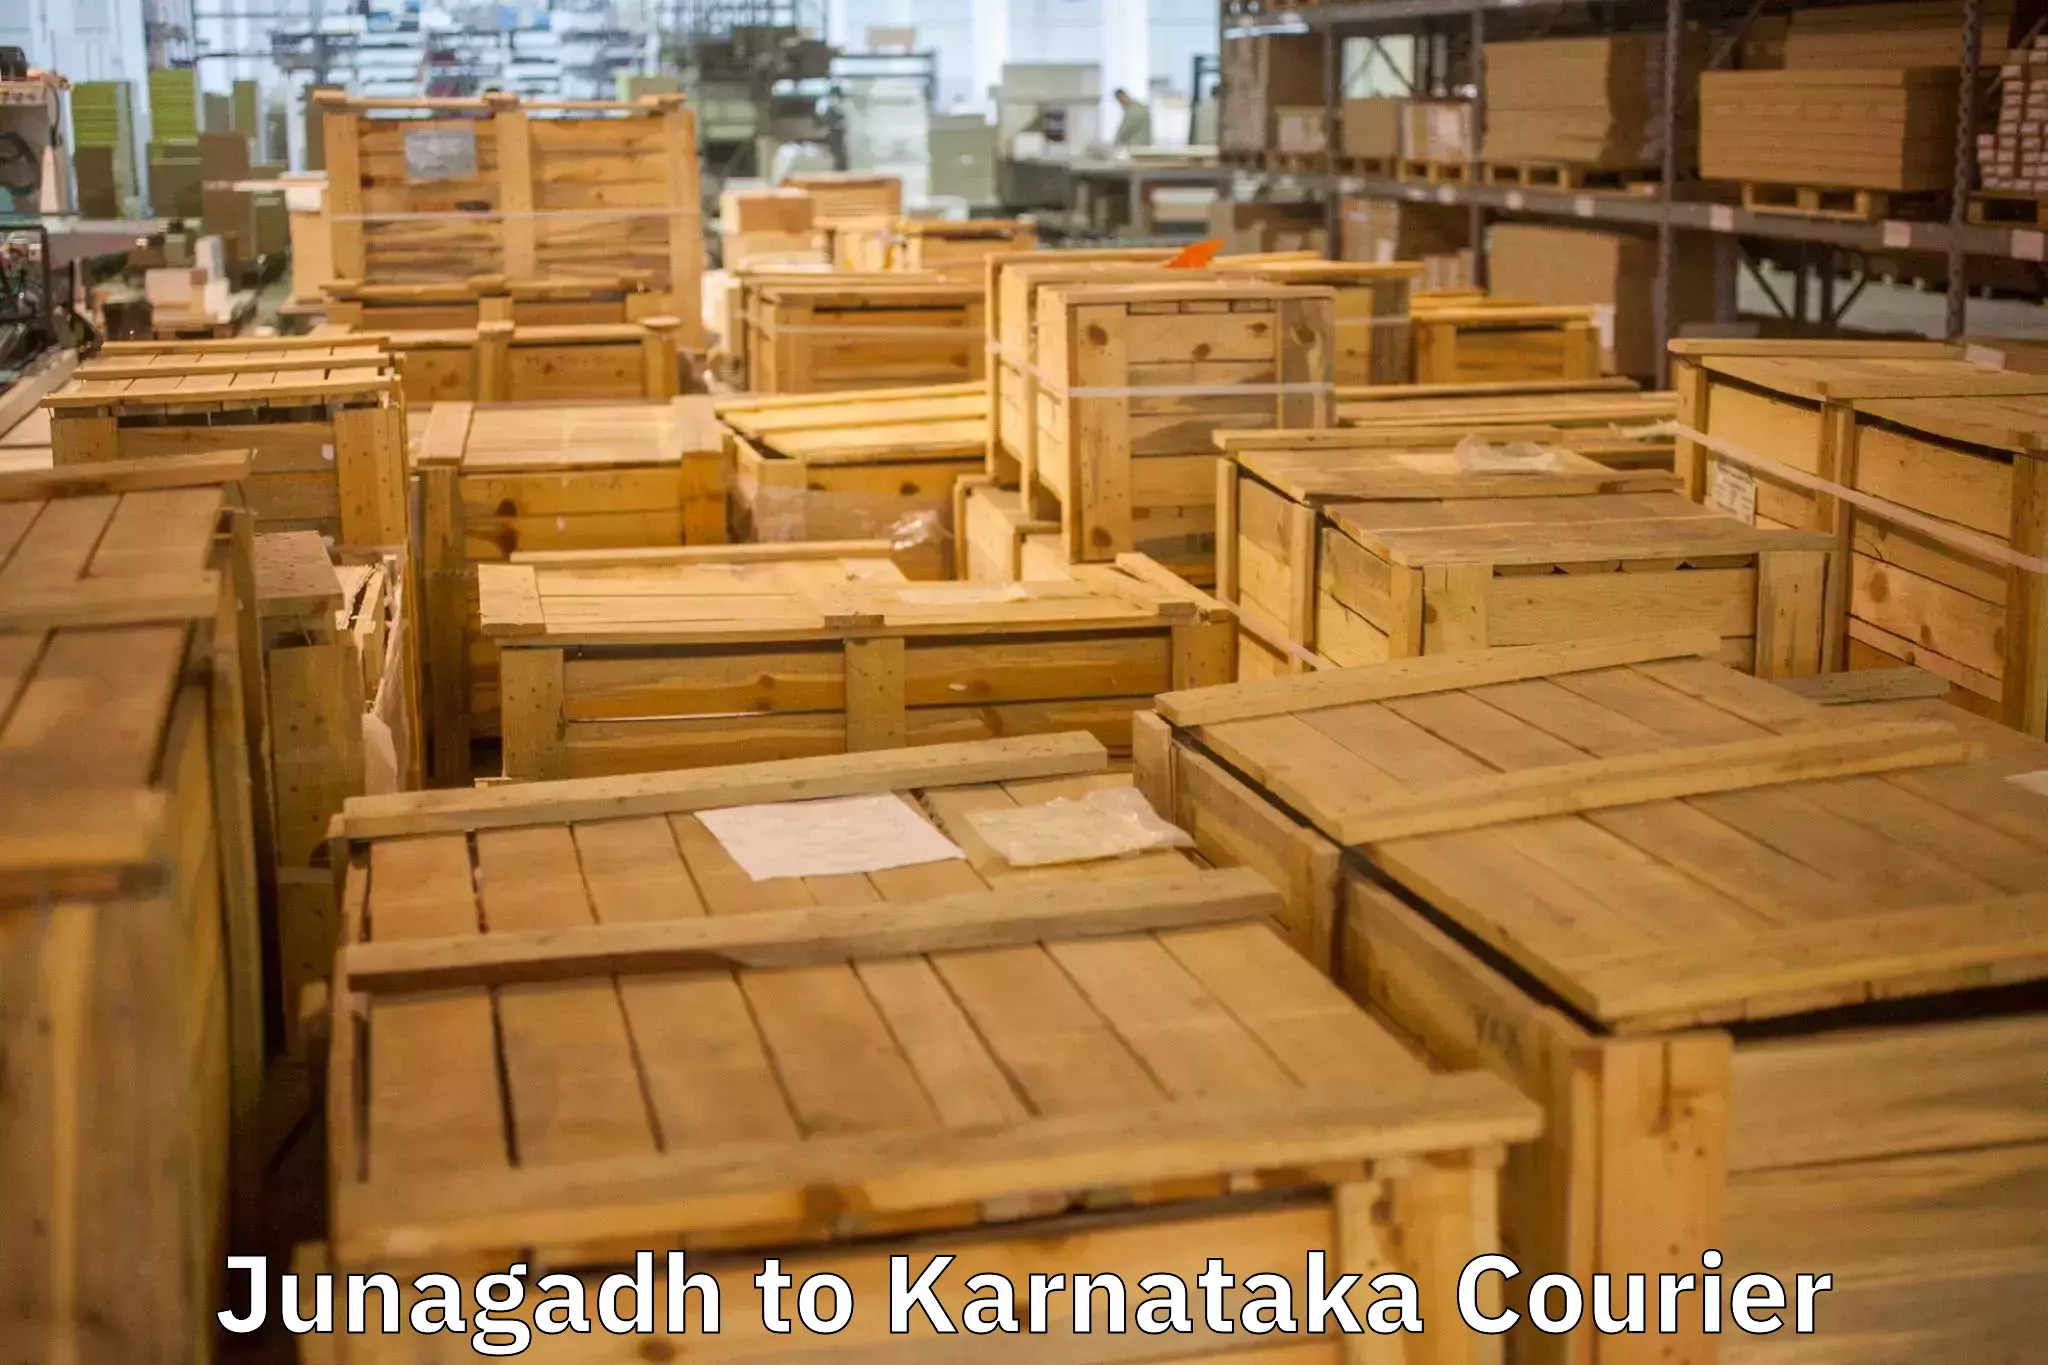 Moving and packing experts Junagadh to Mahalingpur